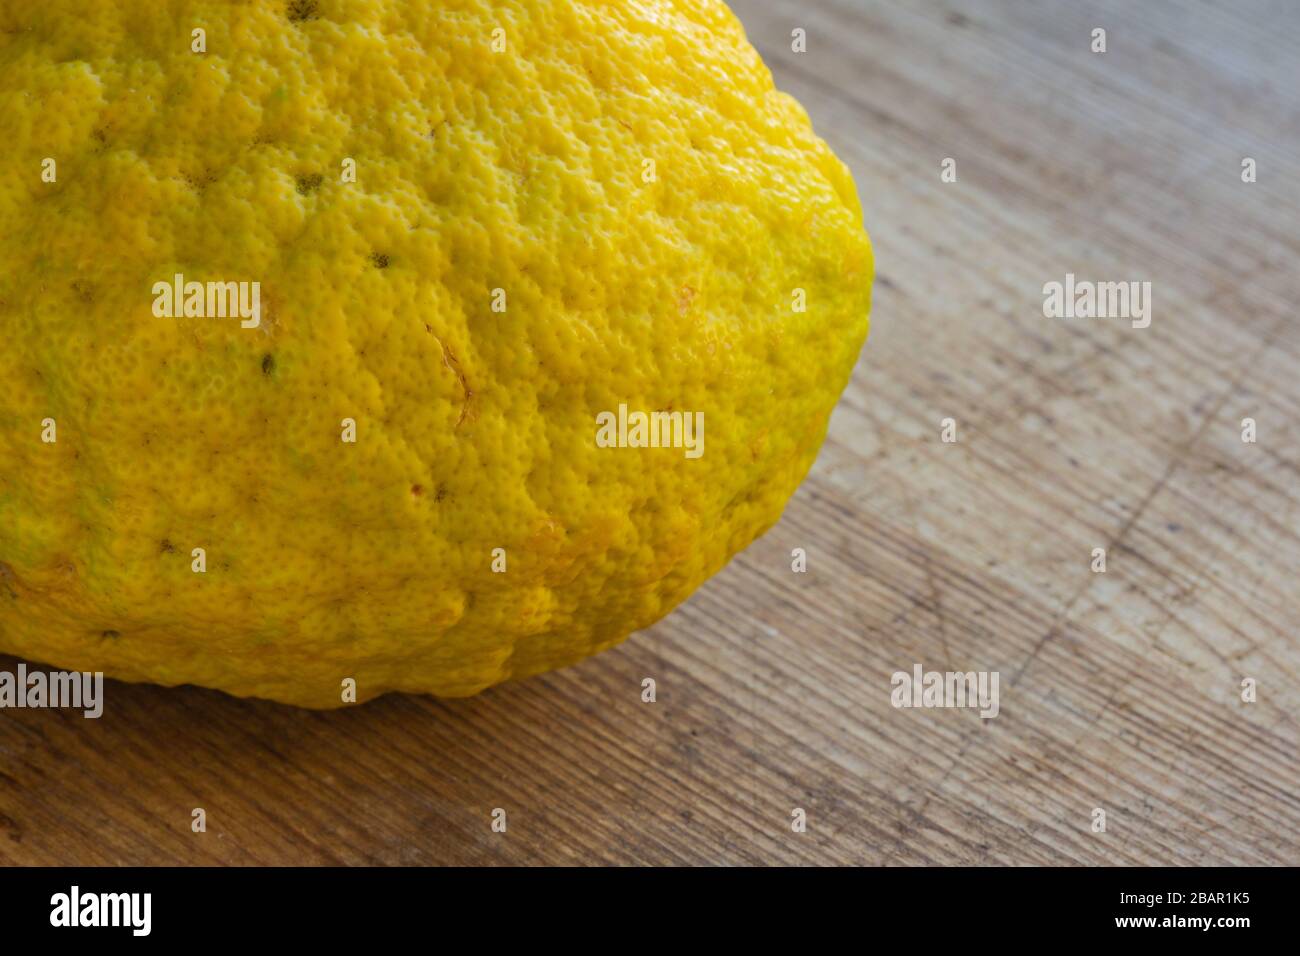 fruits frais de citron se rapproche sur une planche en bois avec espace de copie Banque D'Images